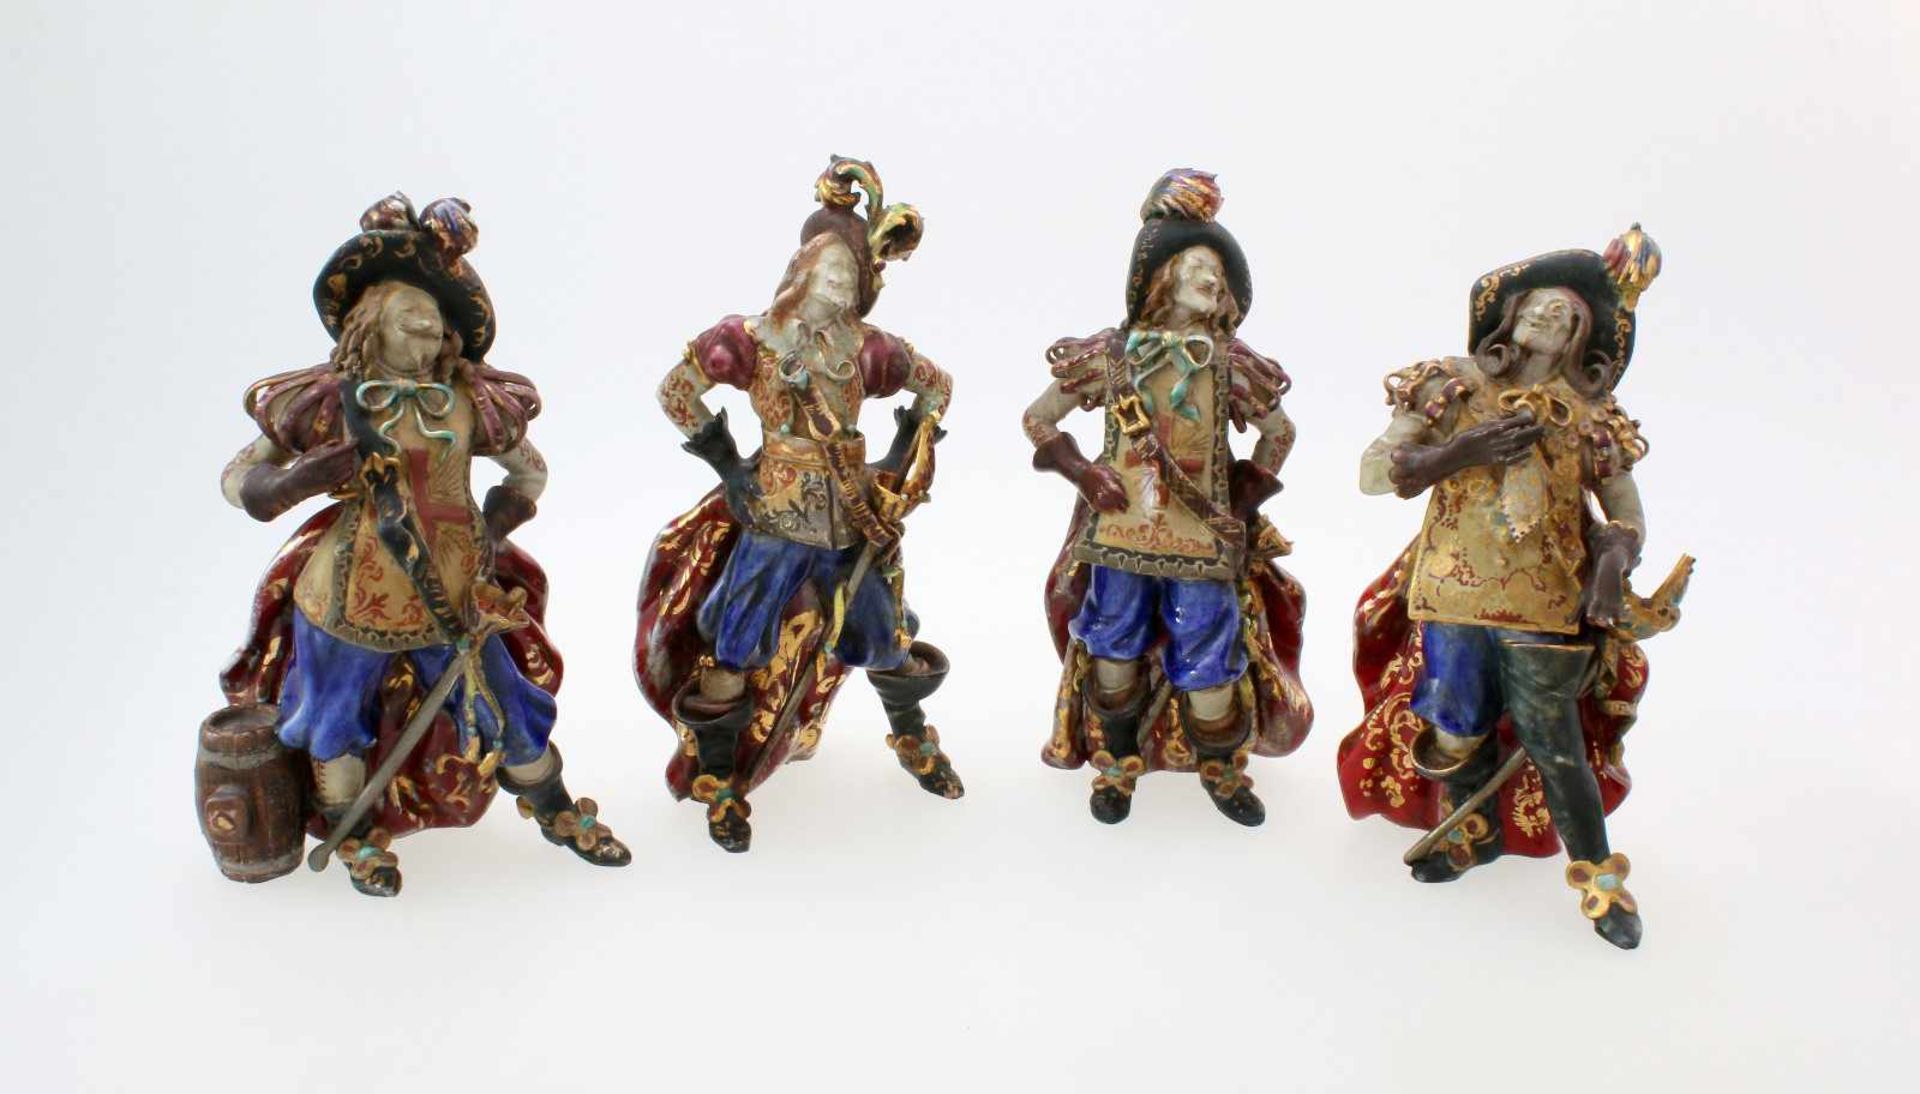 Keramikfiguren - "Die 4 Musketiere" - Eugenio Pattarino (1885-1971)Keramik nach dem Entwurf des